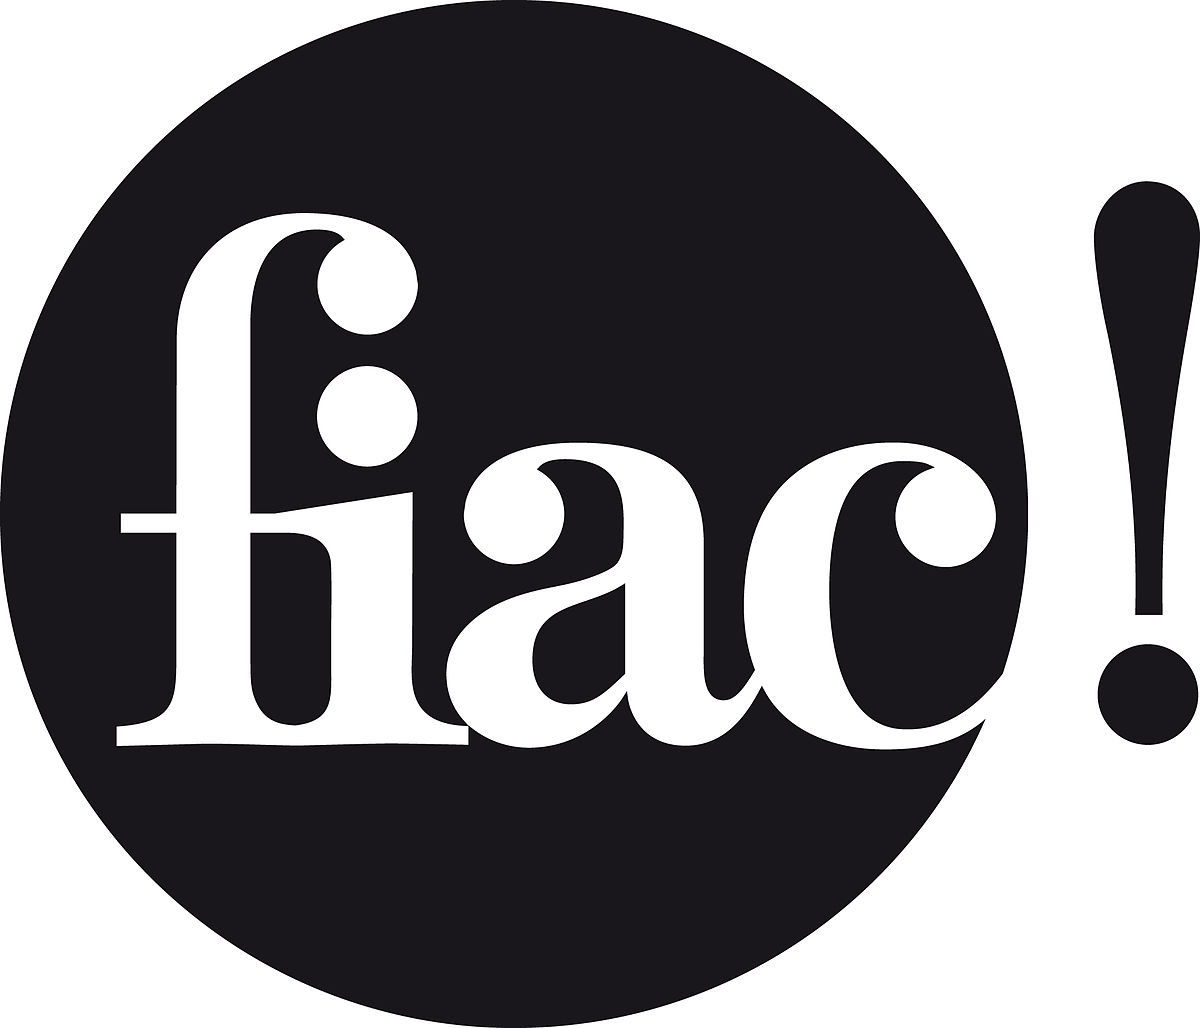 Fiac logo